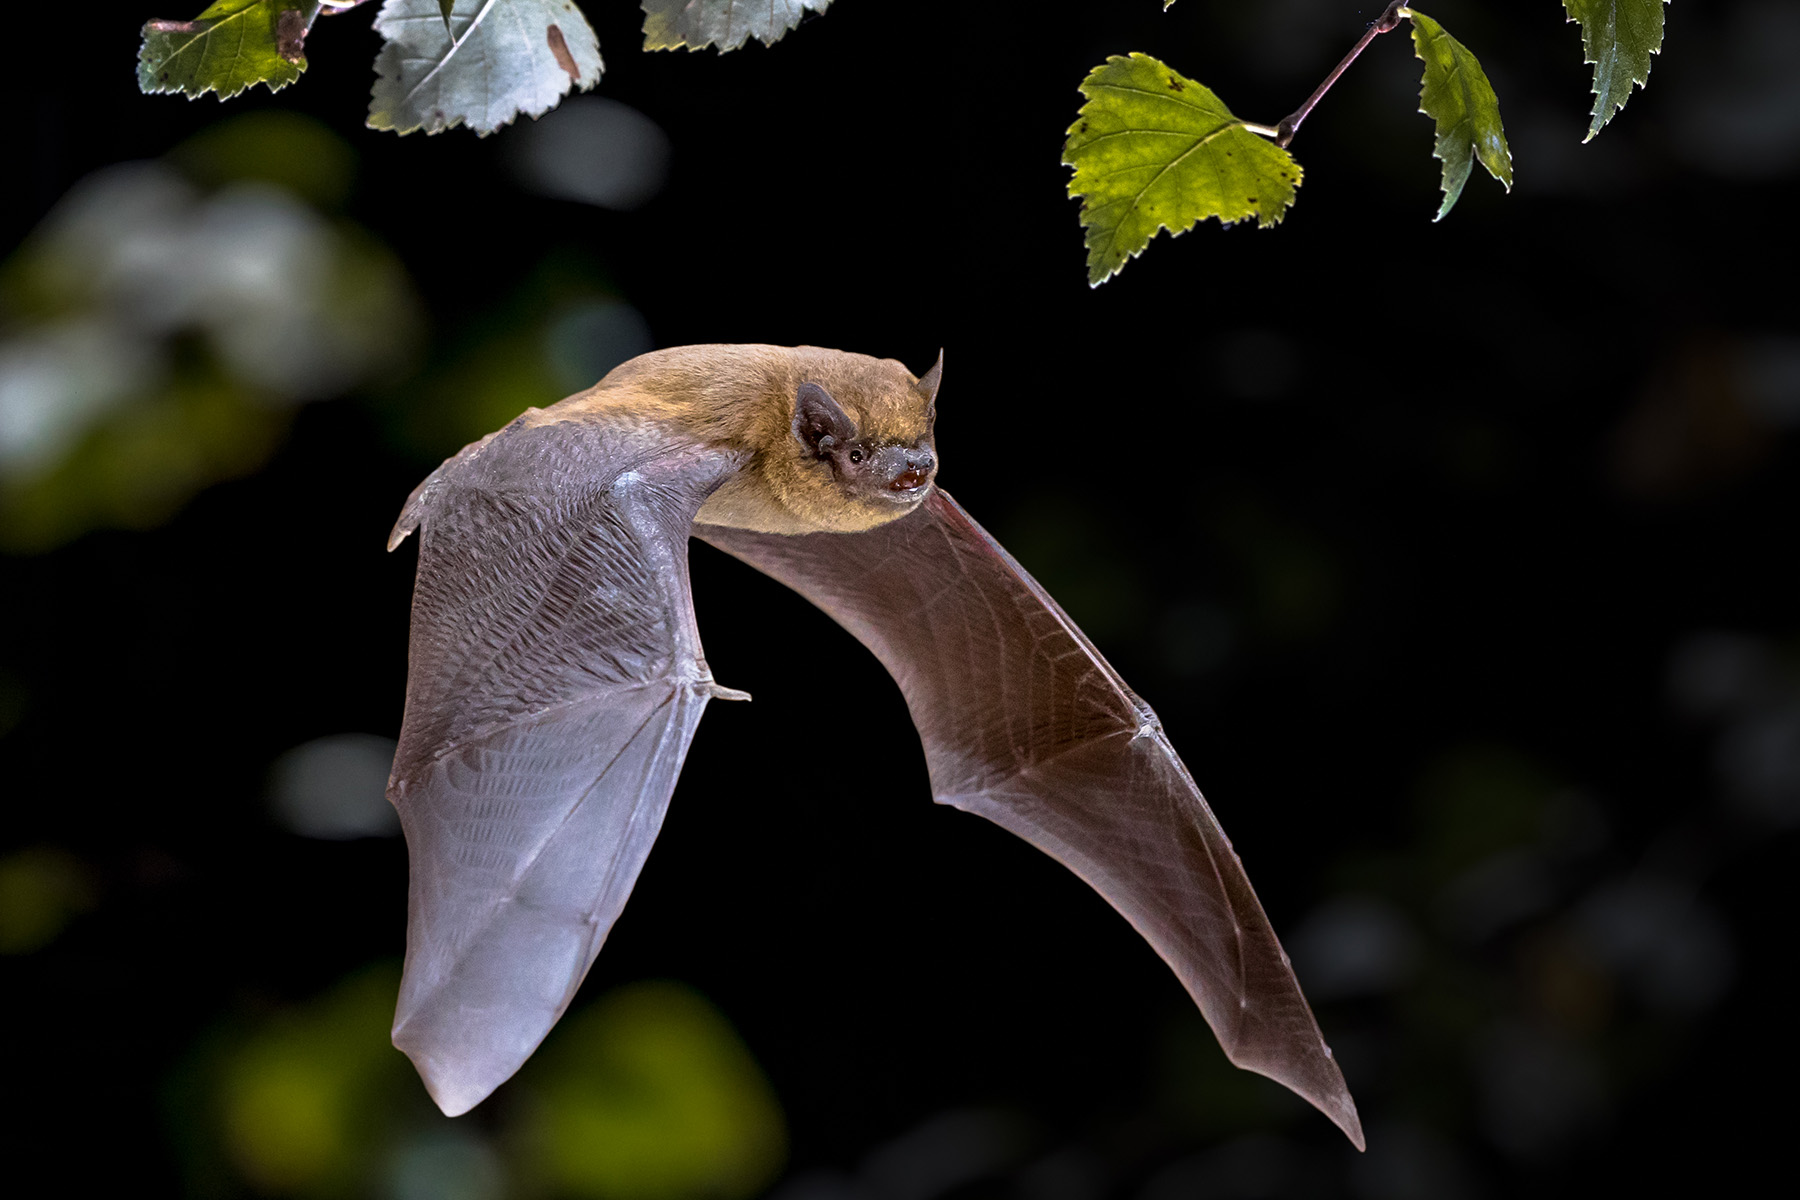 A photo of a bat flying through the air.